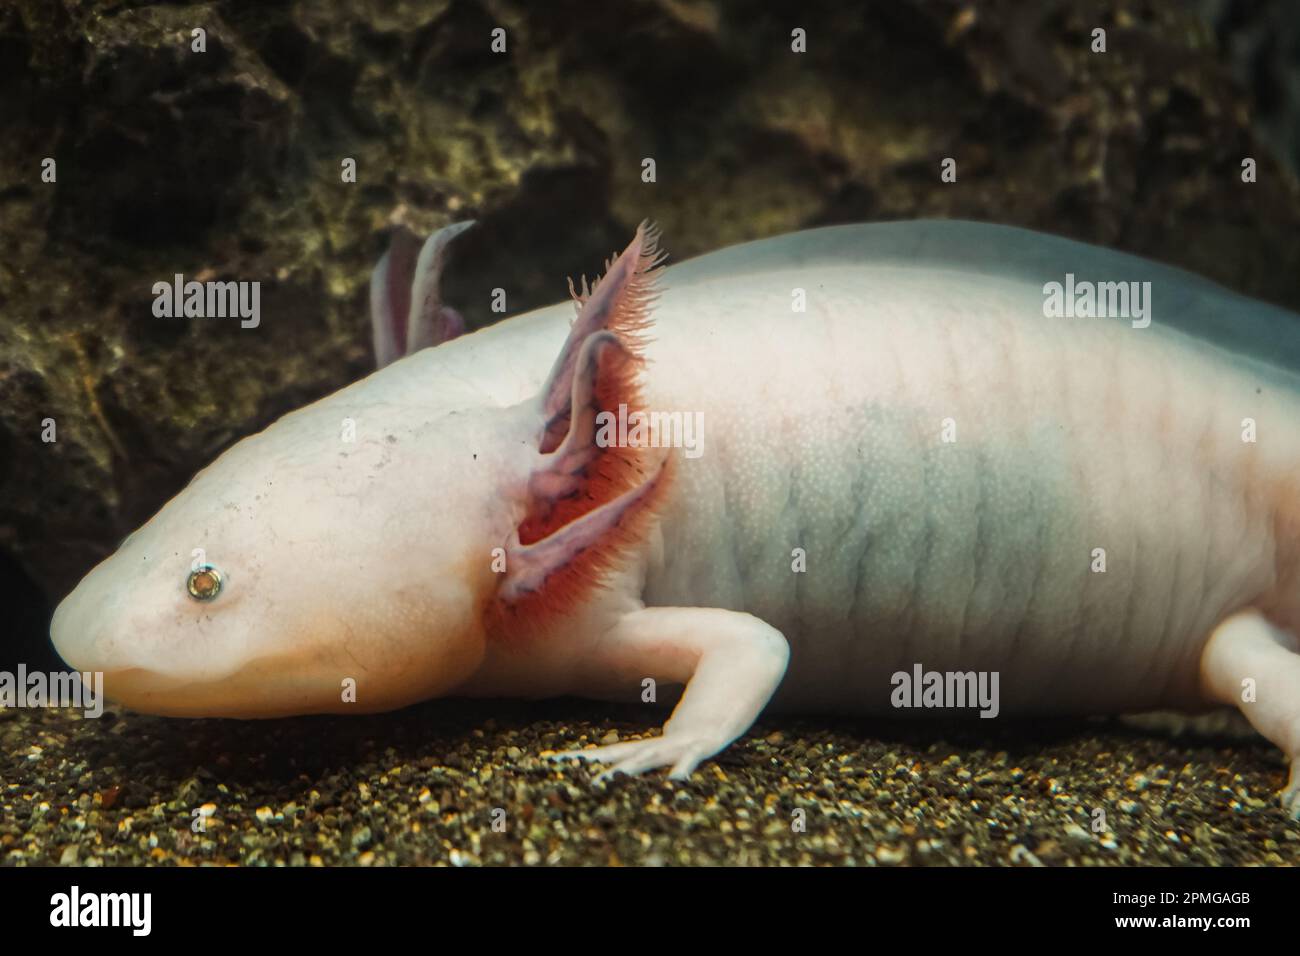 Axolotl messicano immagini e fotografie stock ad alta risoluzione - Alamy